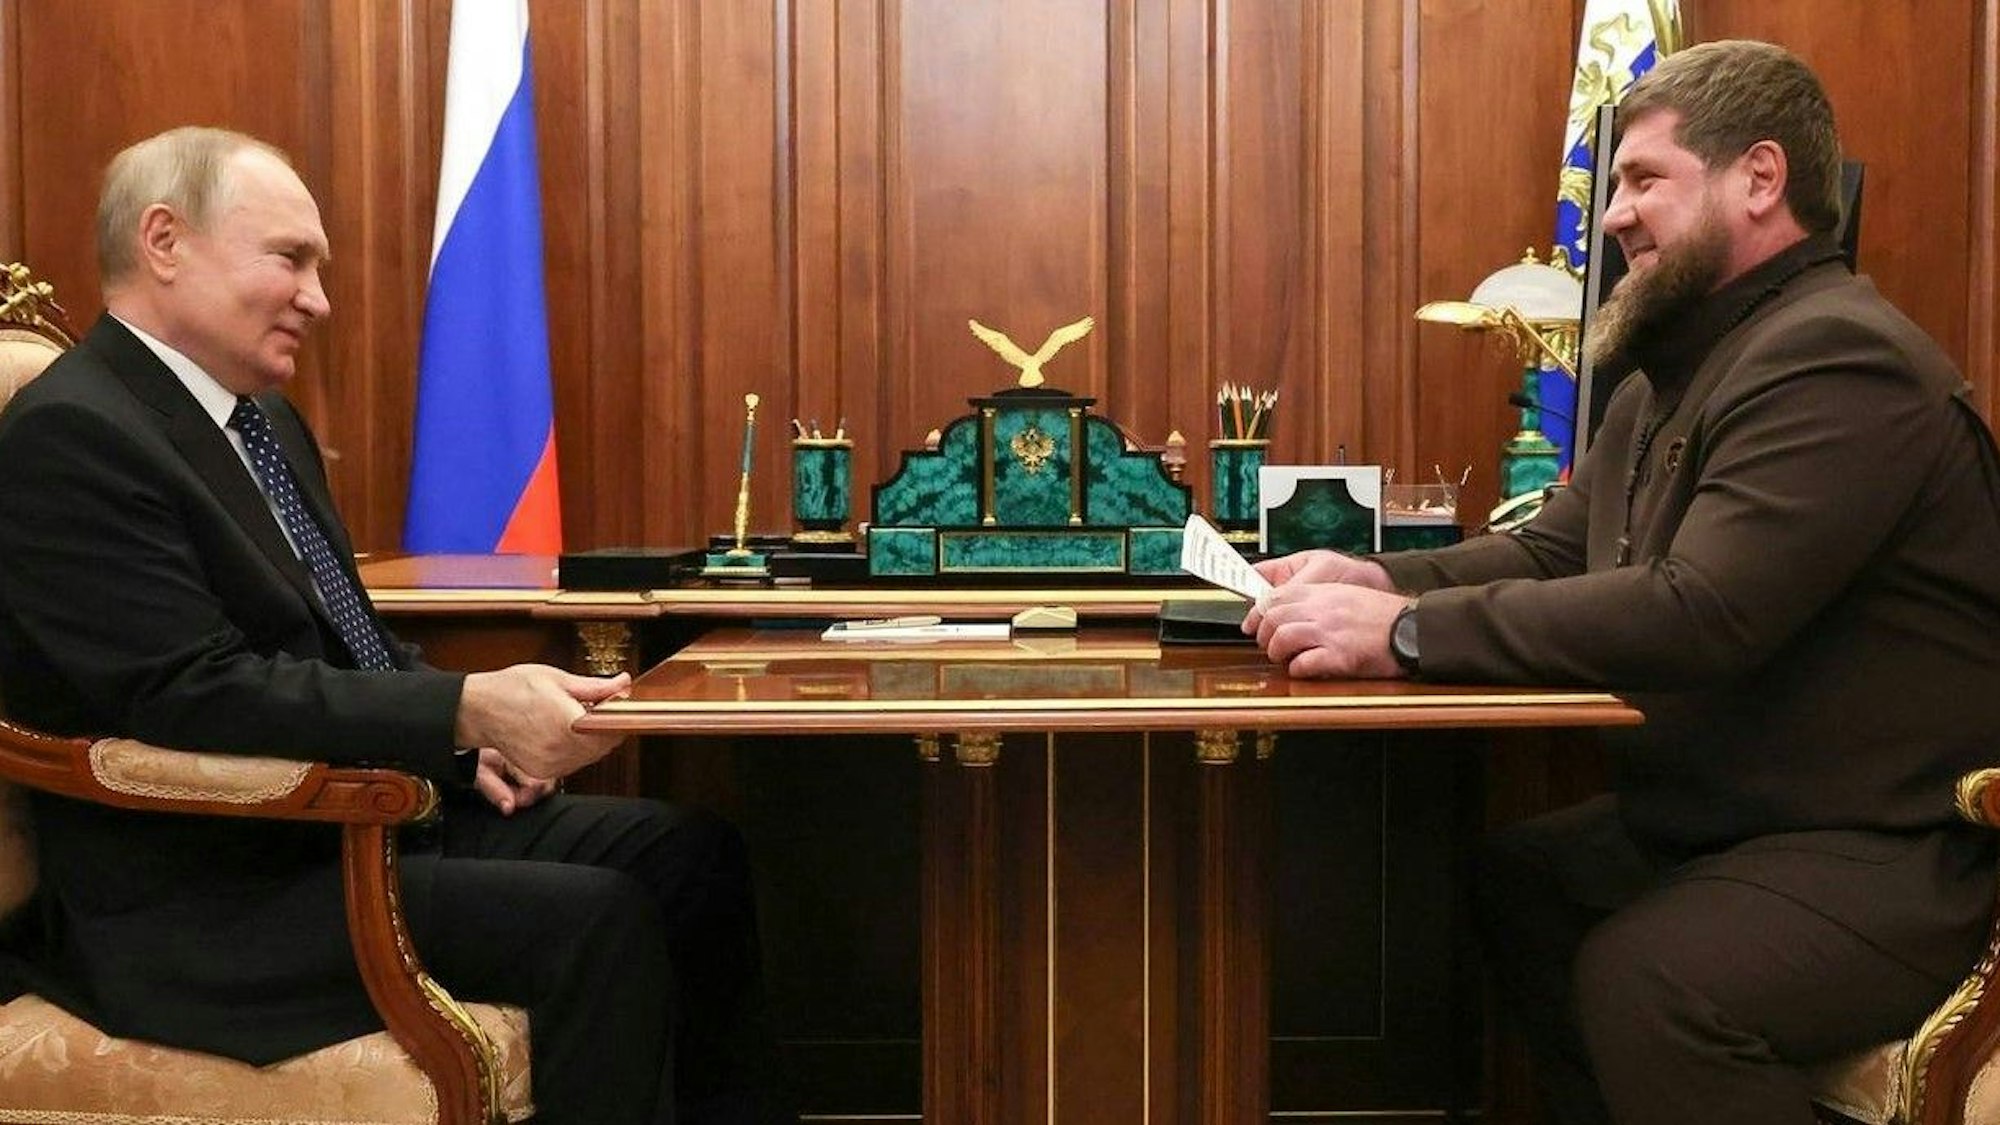 Gute Stimmung: Kremlchef Wladimir Putin und Tschetschenen-Anführer Ramsan Kadyrow bei einem Treffen im März in Moskau. Derzeit gibt es viele Spekulationen um den Gesundheitszustand Kadyrows.